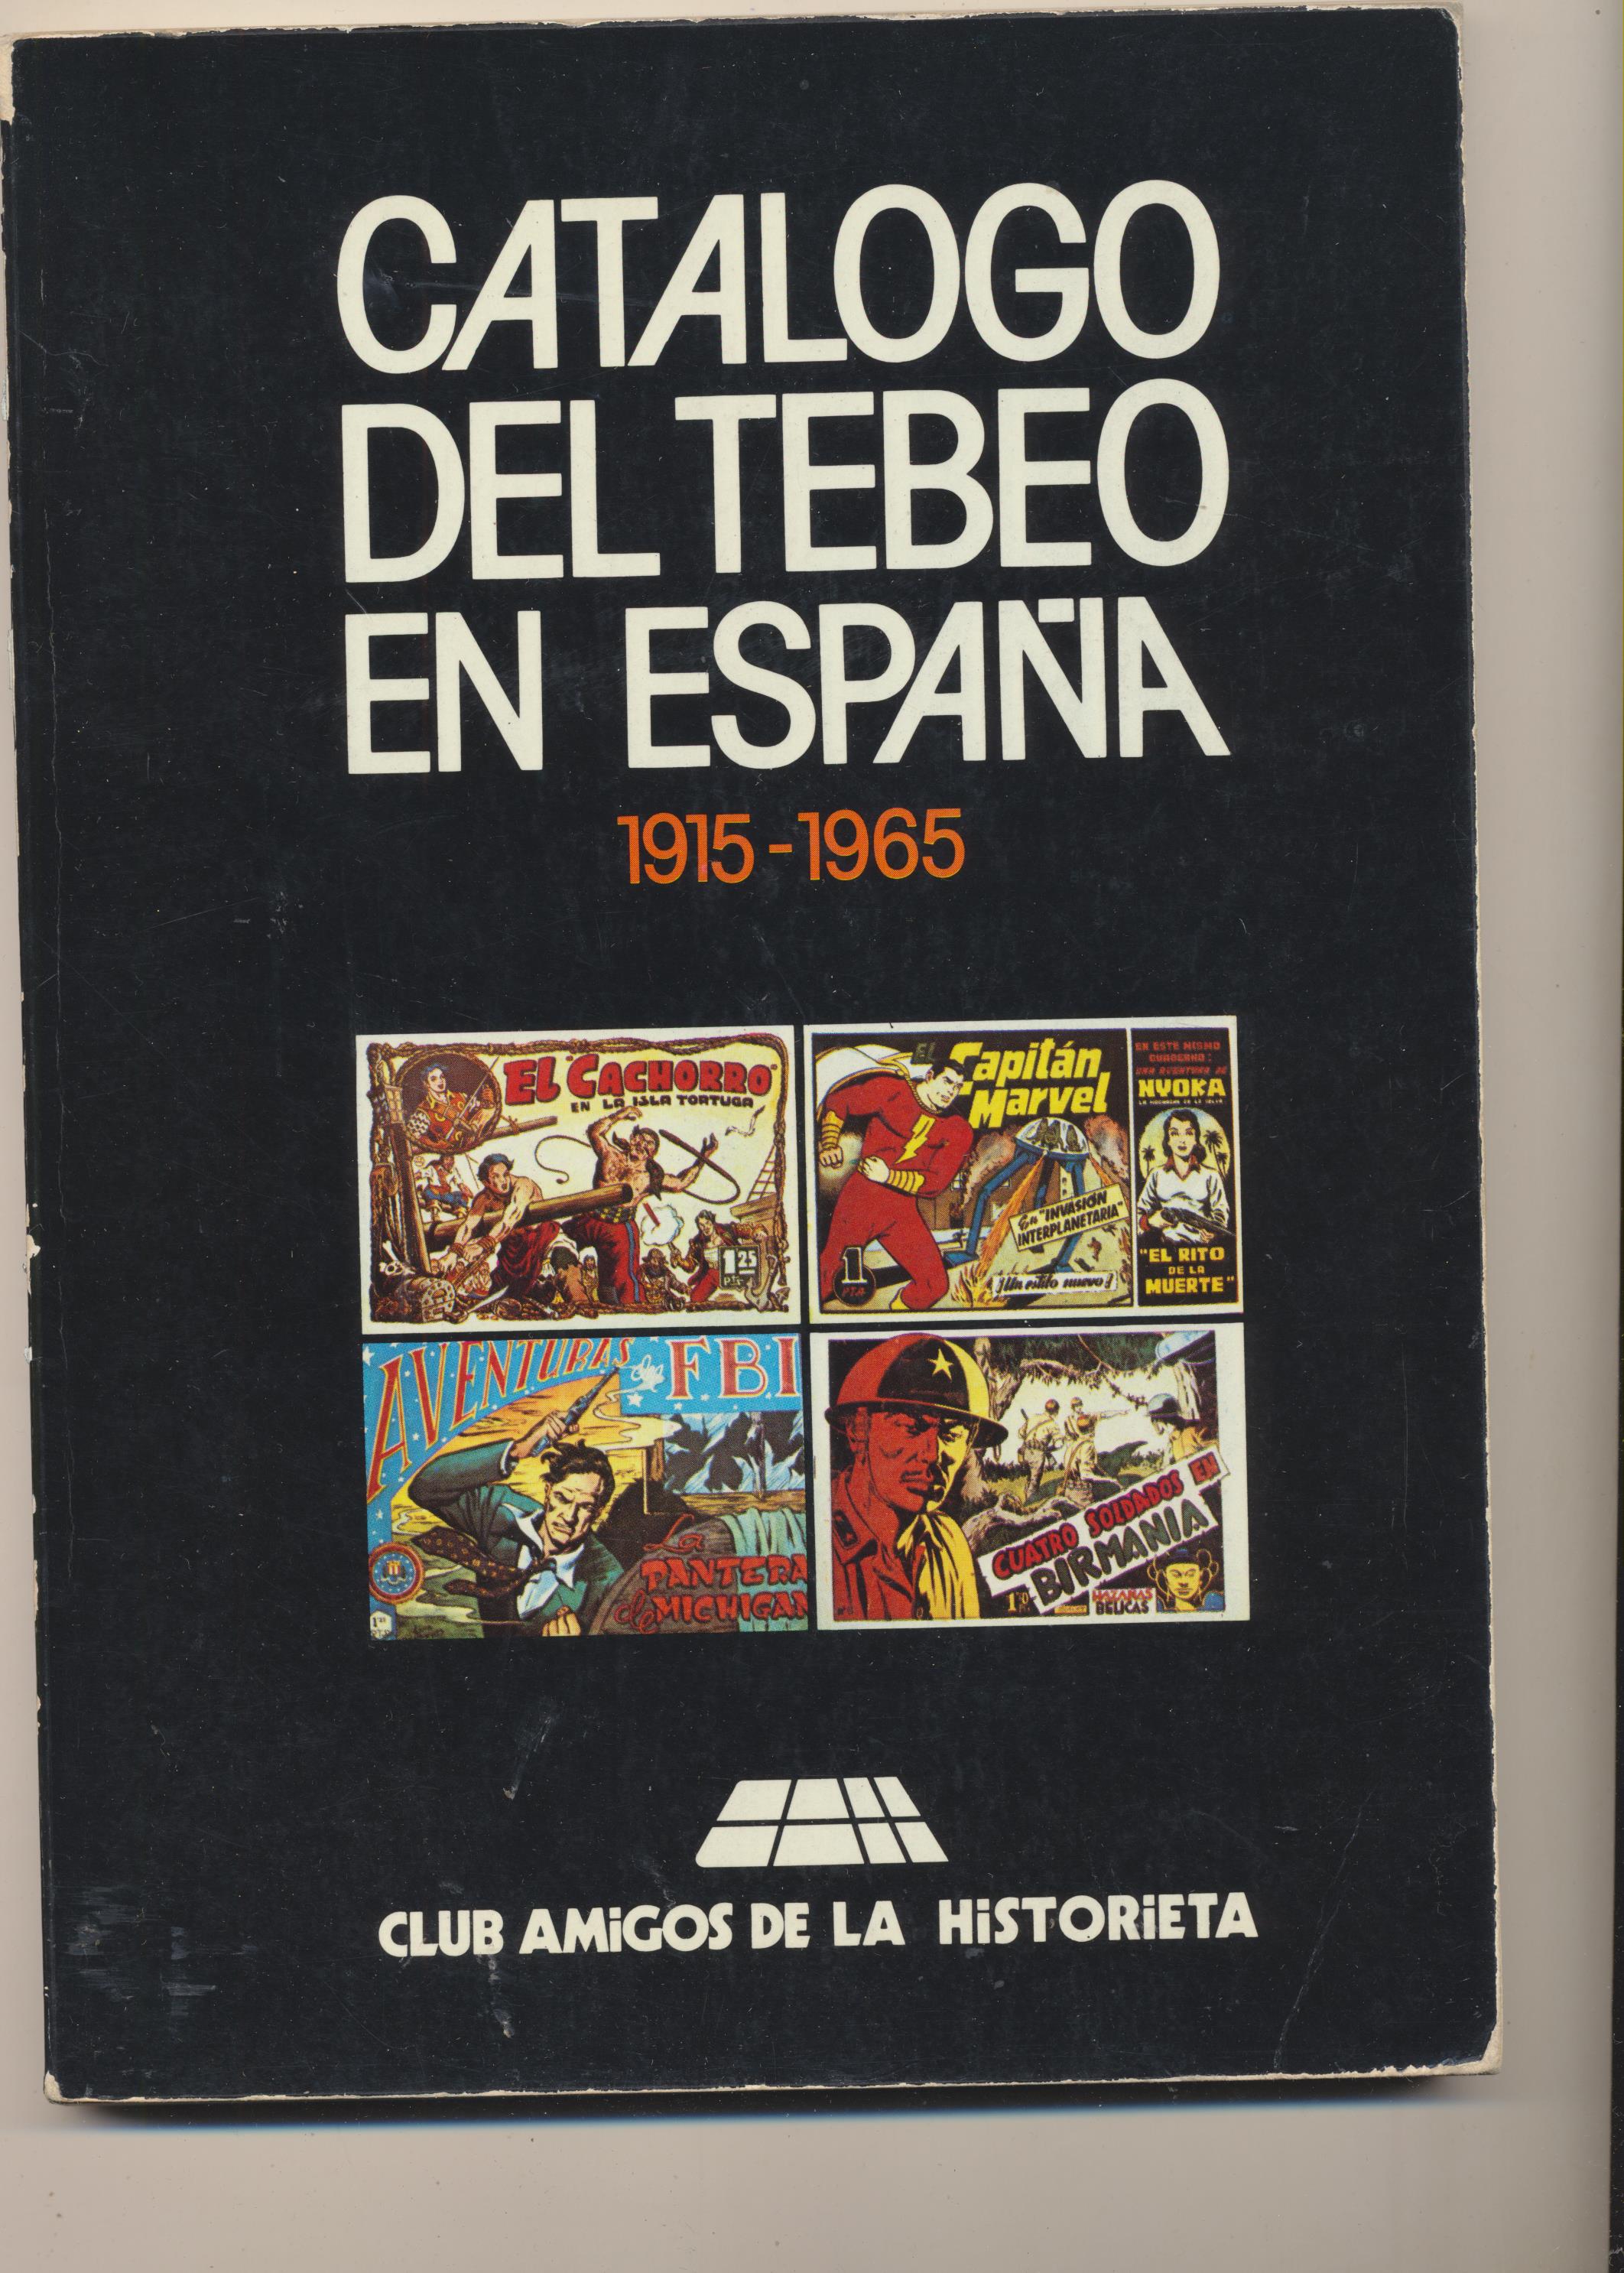 Catálogo del Tebeo en España 1915-1965. Club de Amigos de la Historieta. 1980